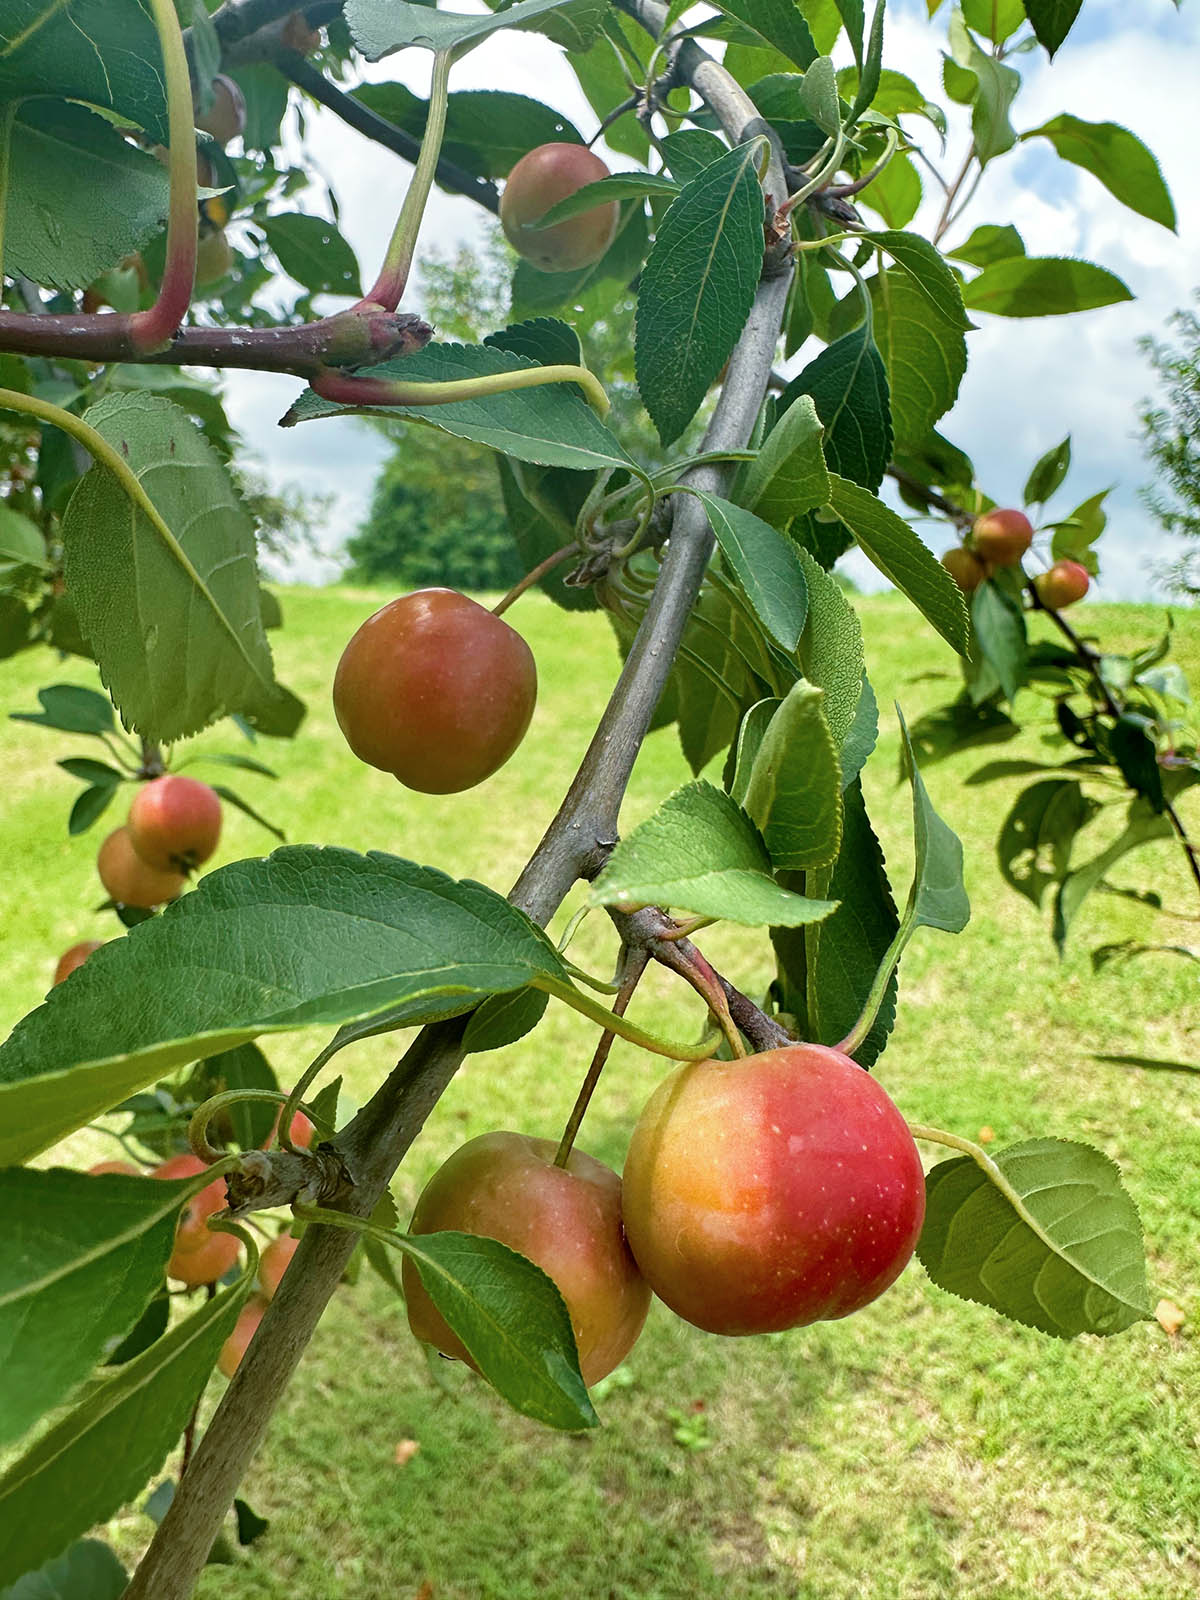 辰山植物园海棠树结满可爱小苹果